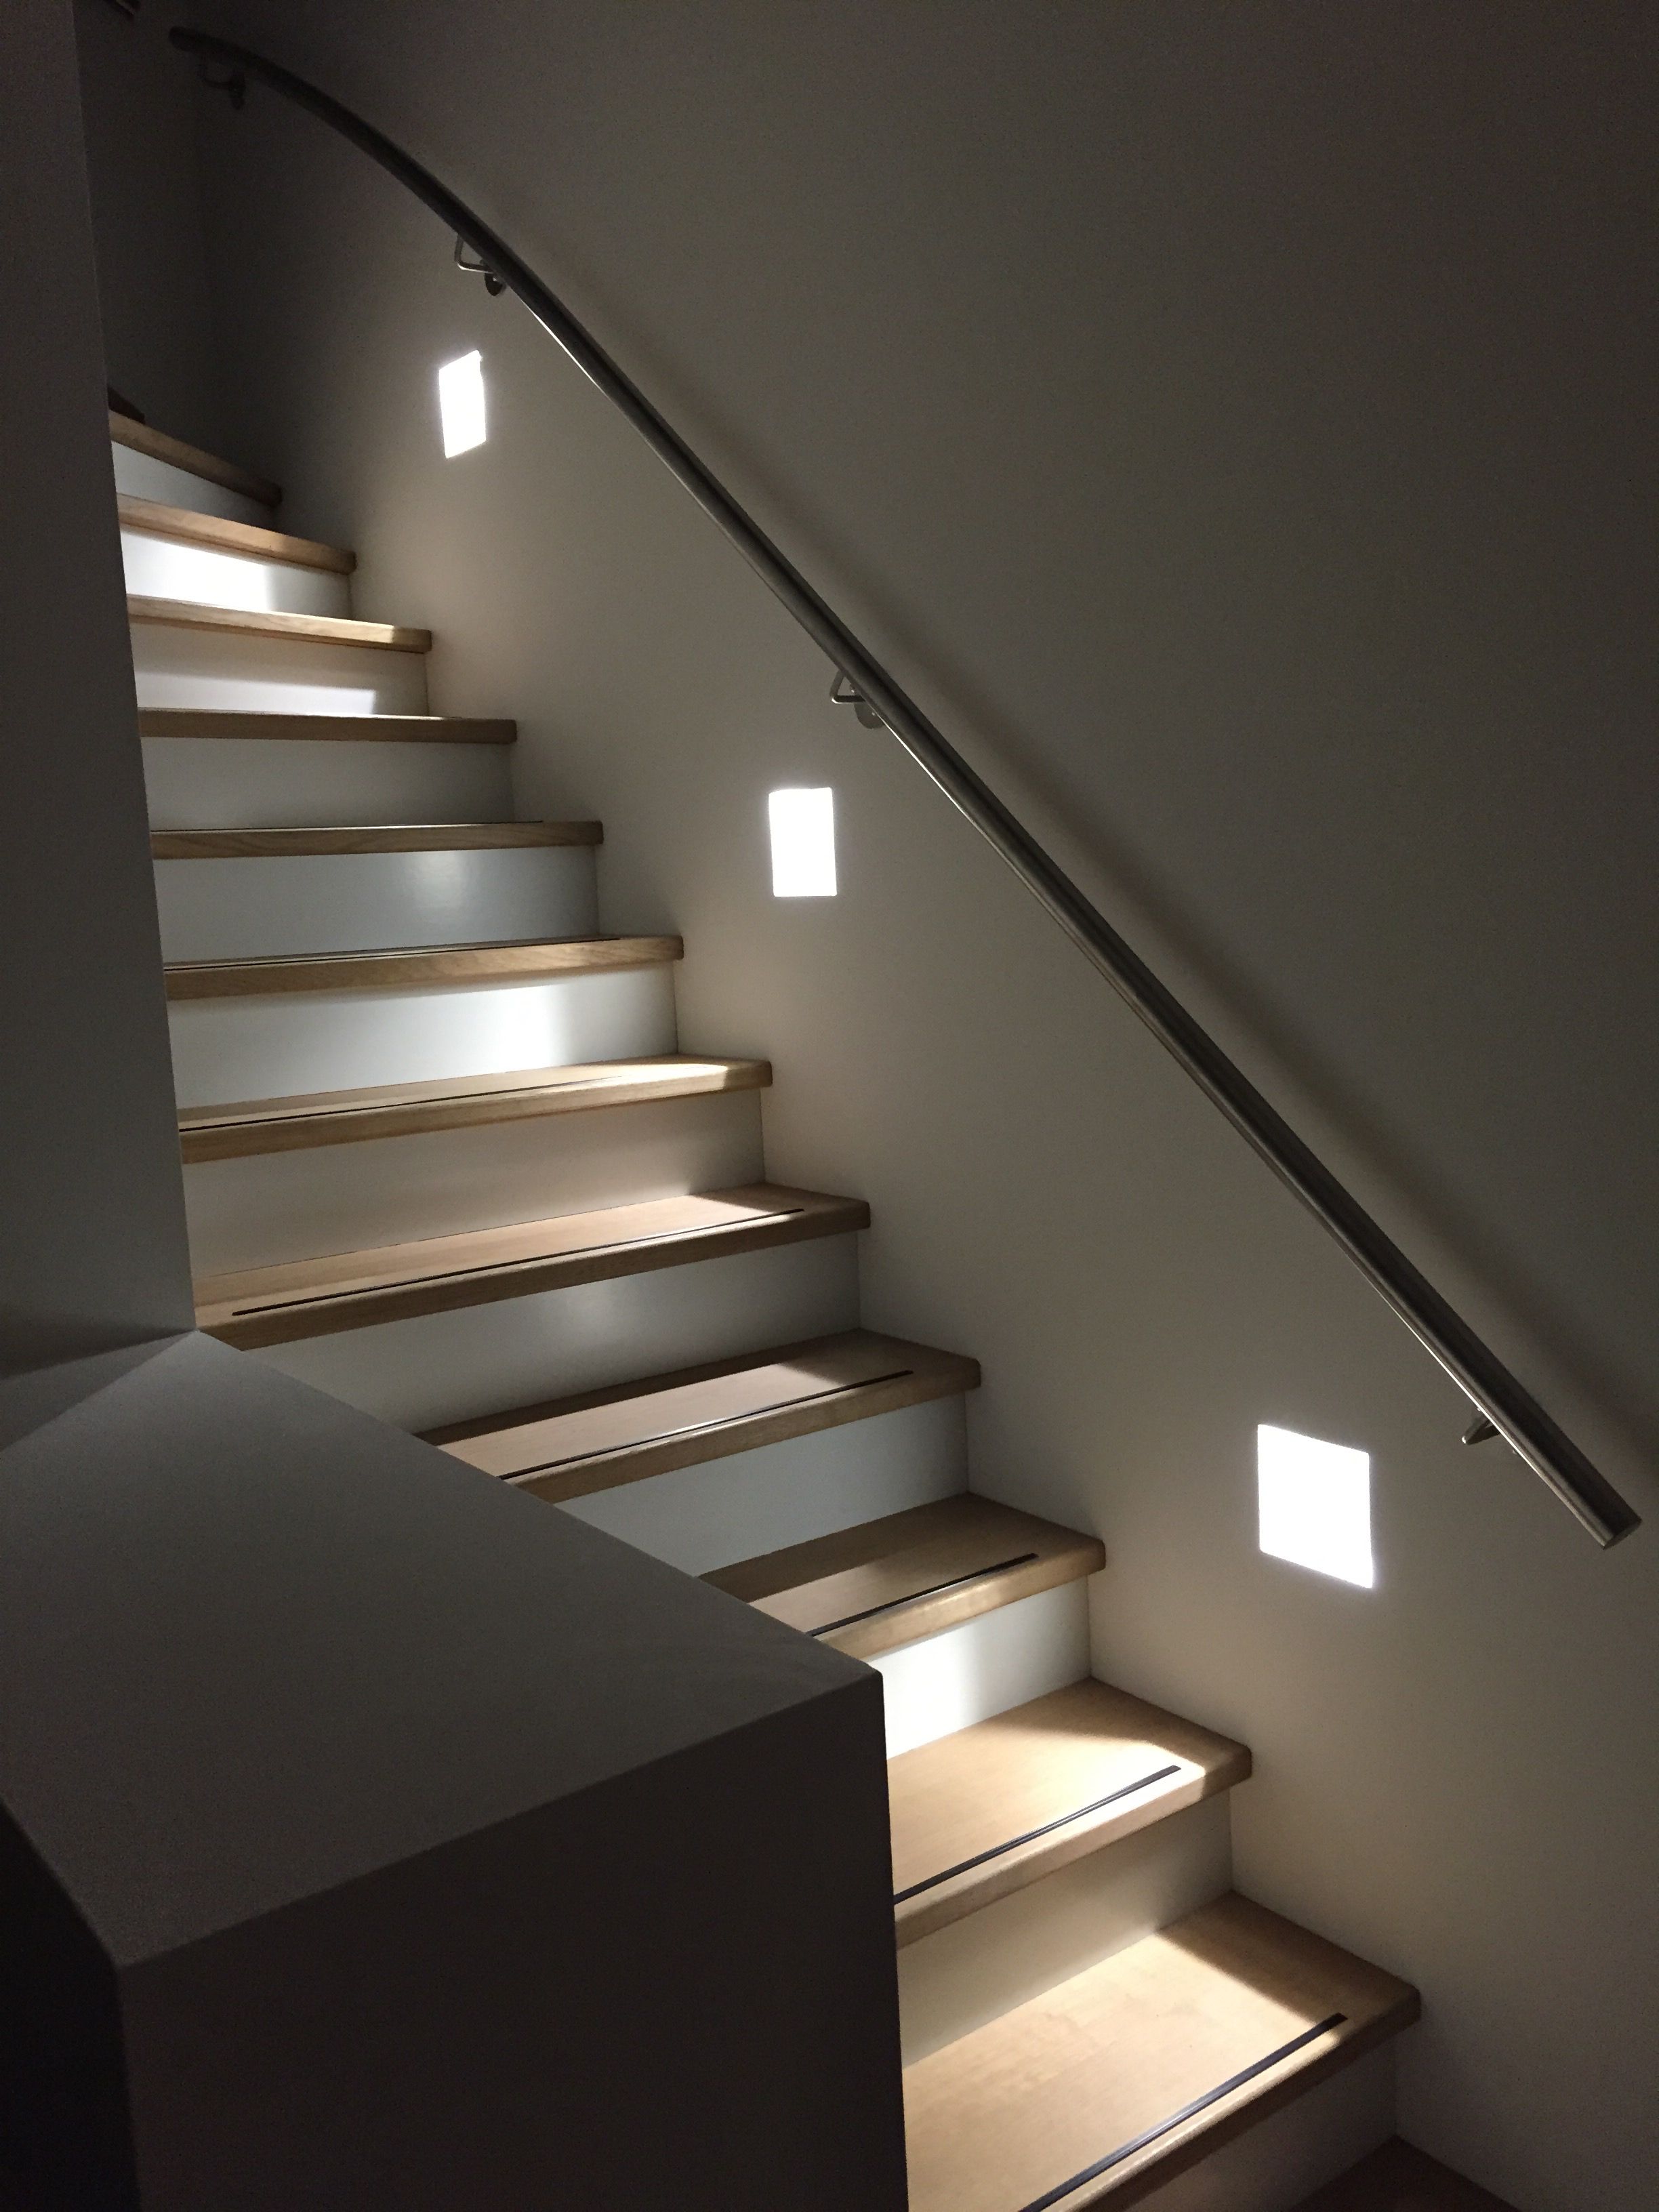 Способы освещения лестниц — светильники и датчики